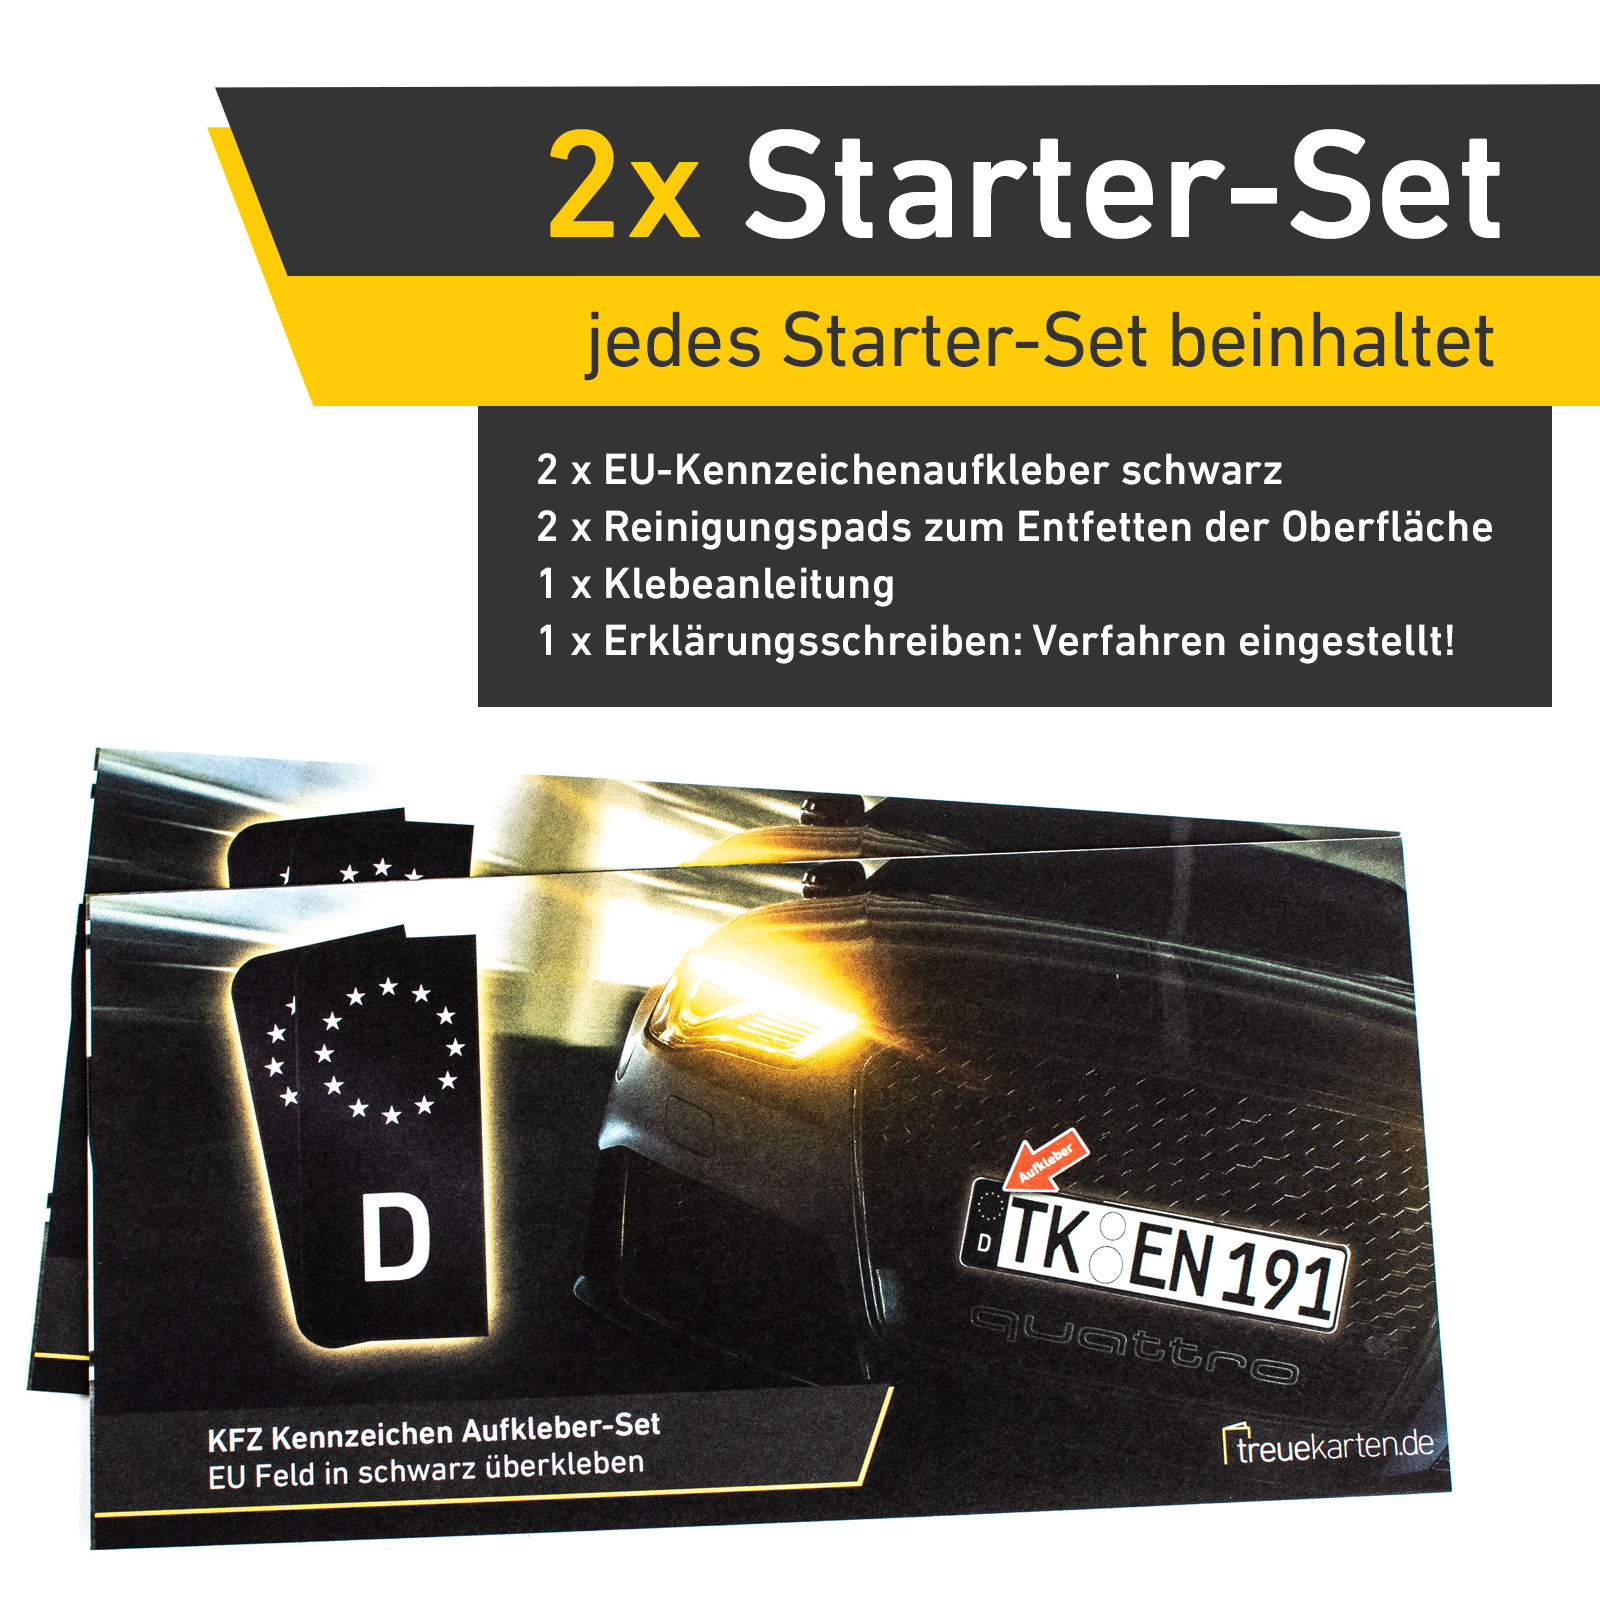 4x Kennzeichen Nummernschild Aufkleber, EU Feld Schwarz, inkl. 2x Starter-Set